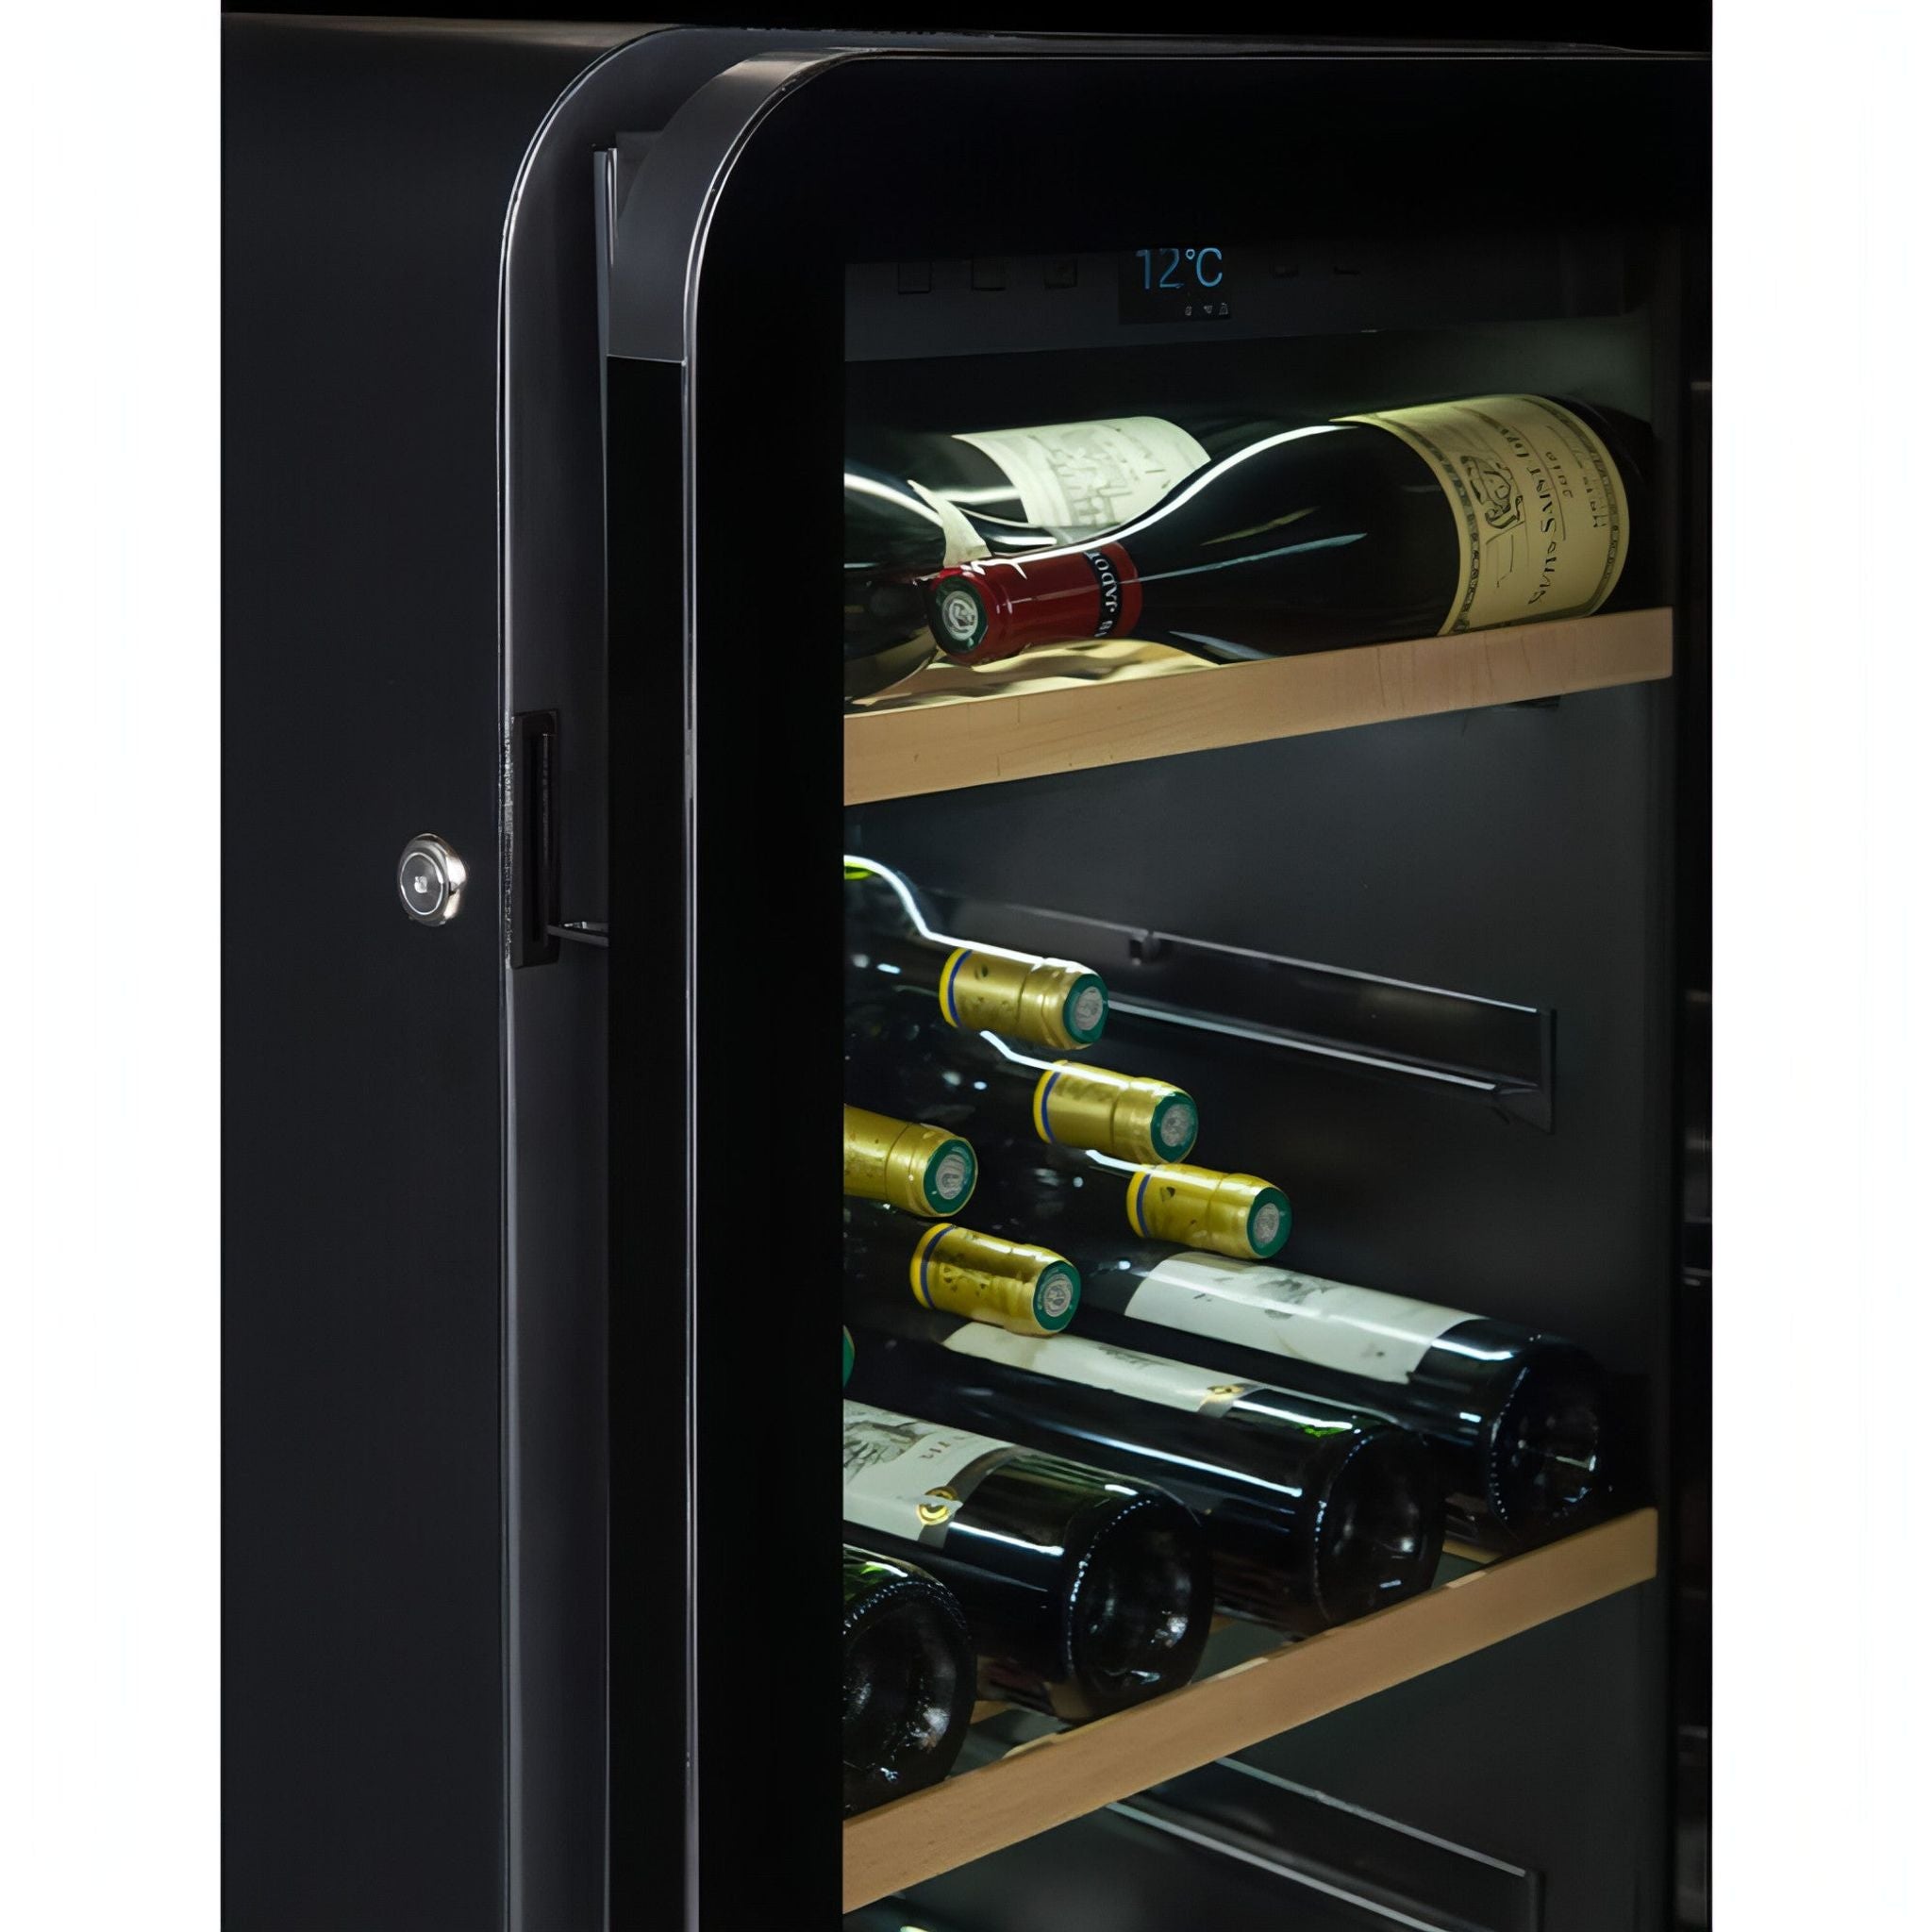 La Sommeliere - 185 Bottle Freestanding Single Zone Wine Cabinet APOGEE200PV